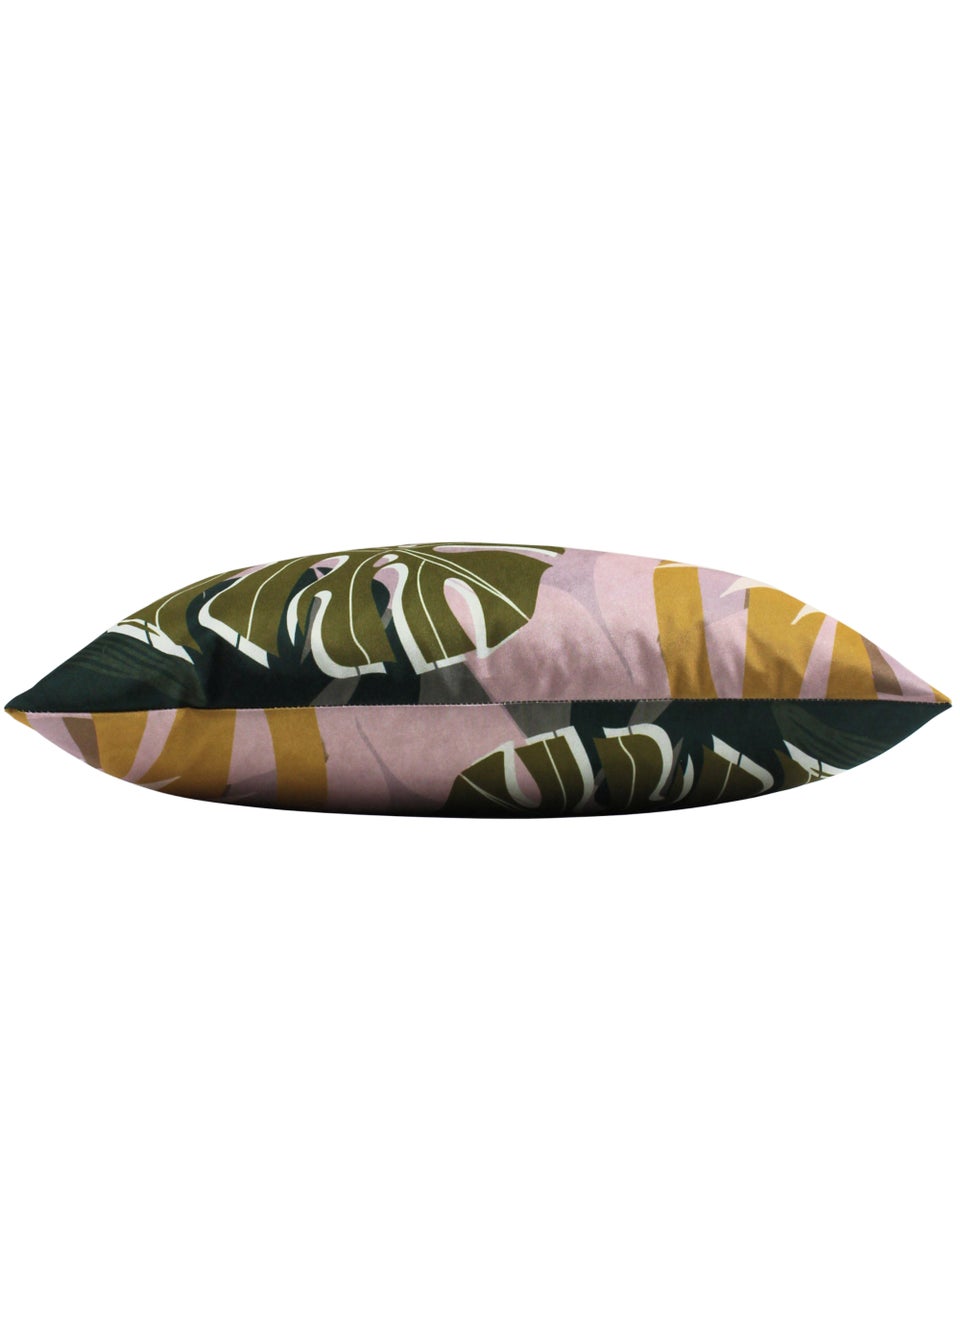 furn. Leafy Outdoor Filled Cushion (30cm x 50cm x 8cm)